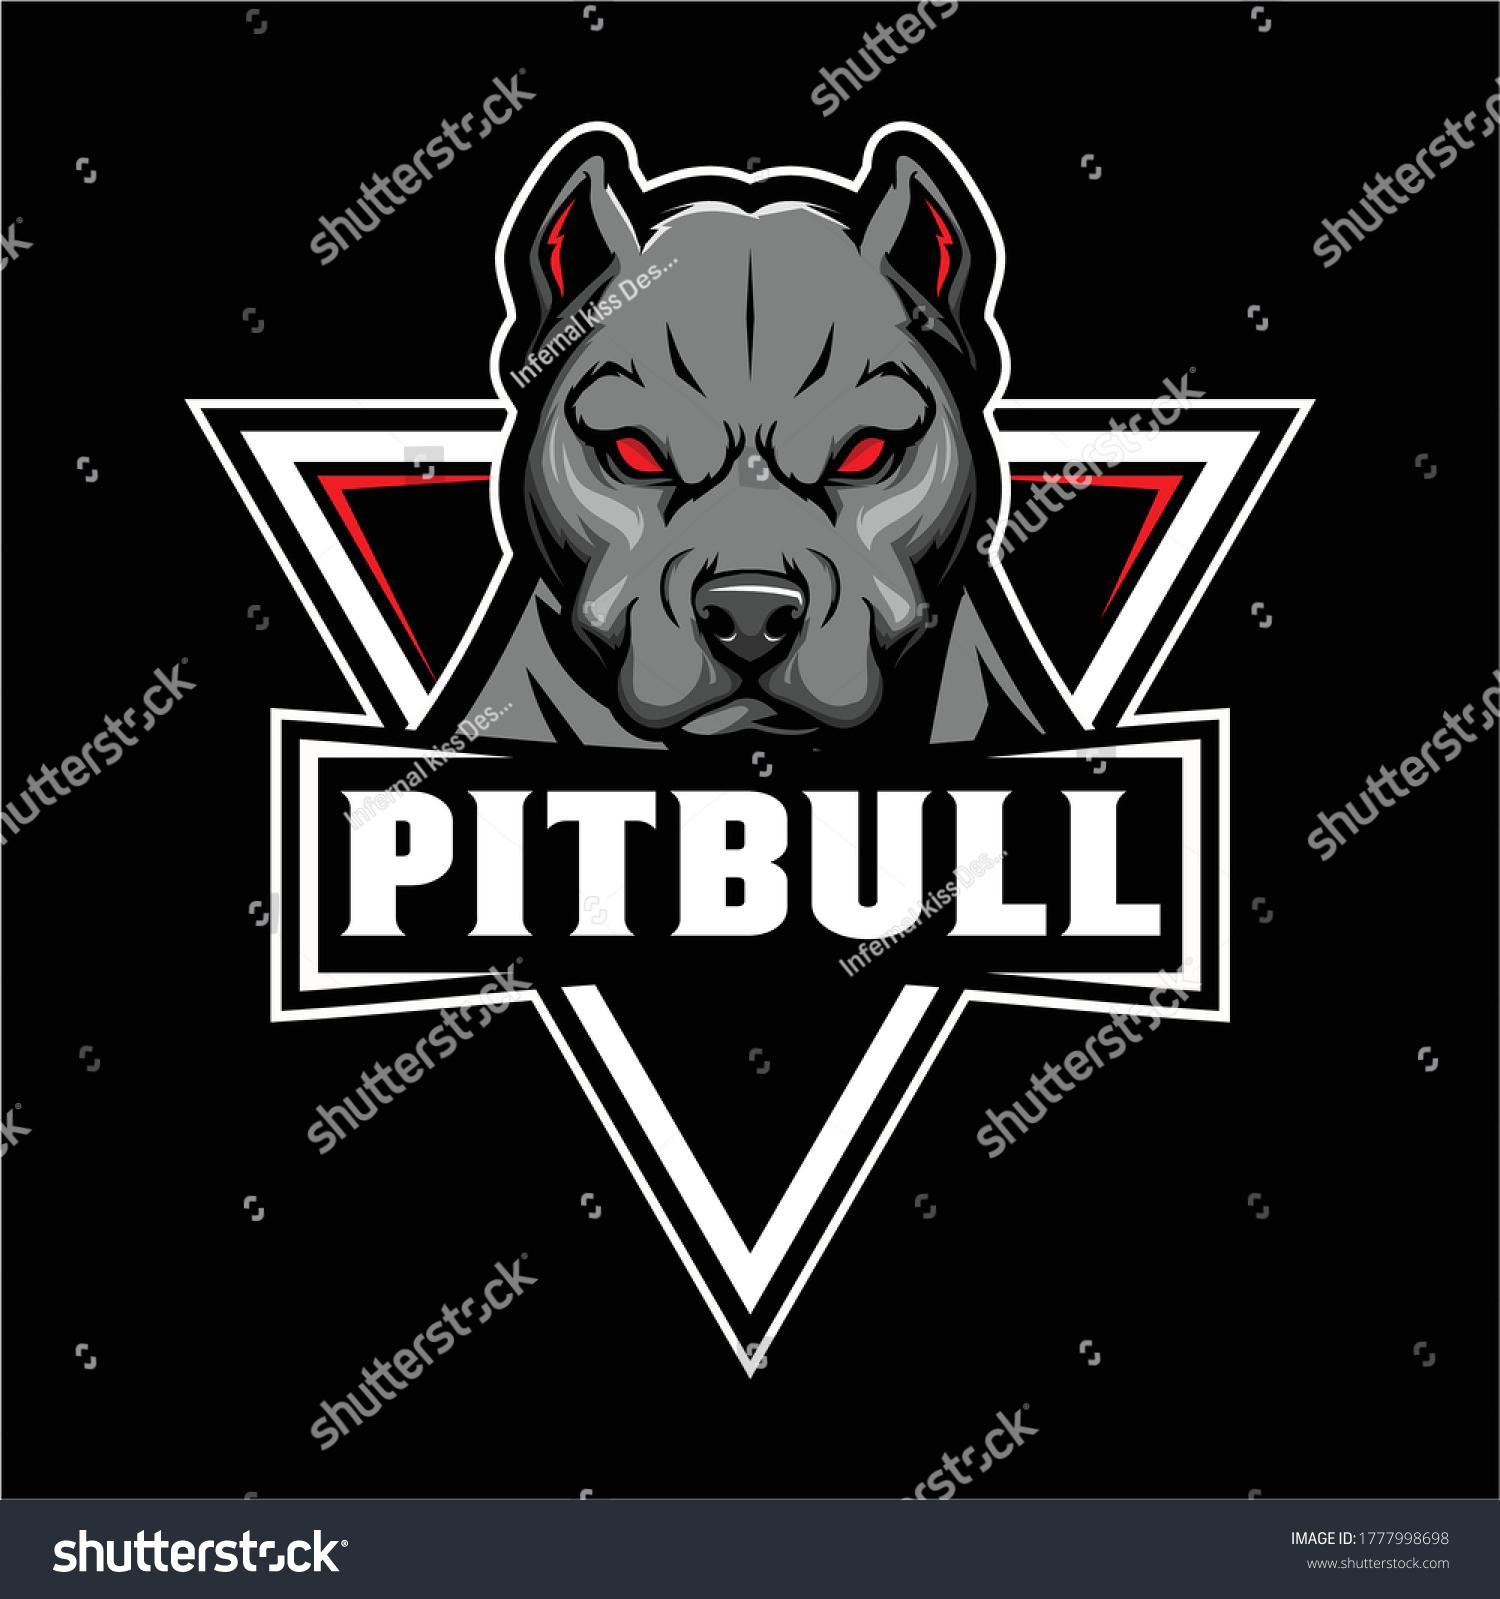 Pitbull extreme логотип